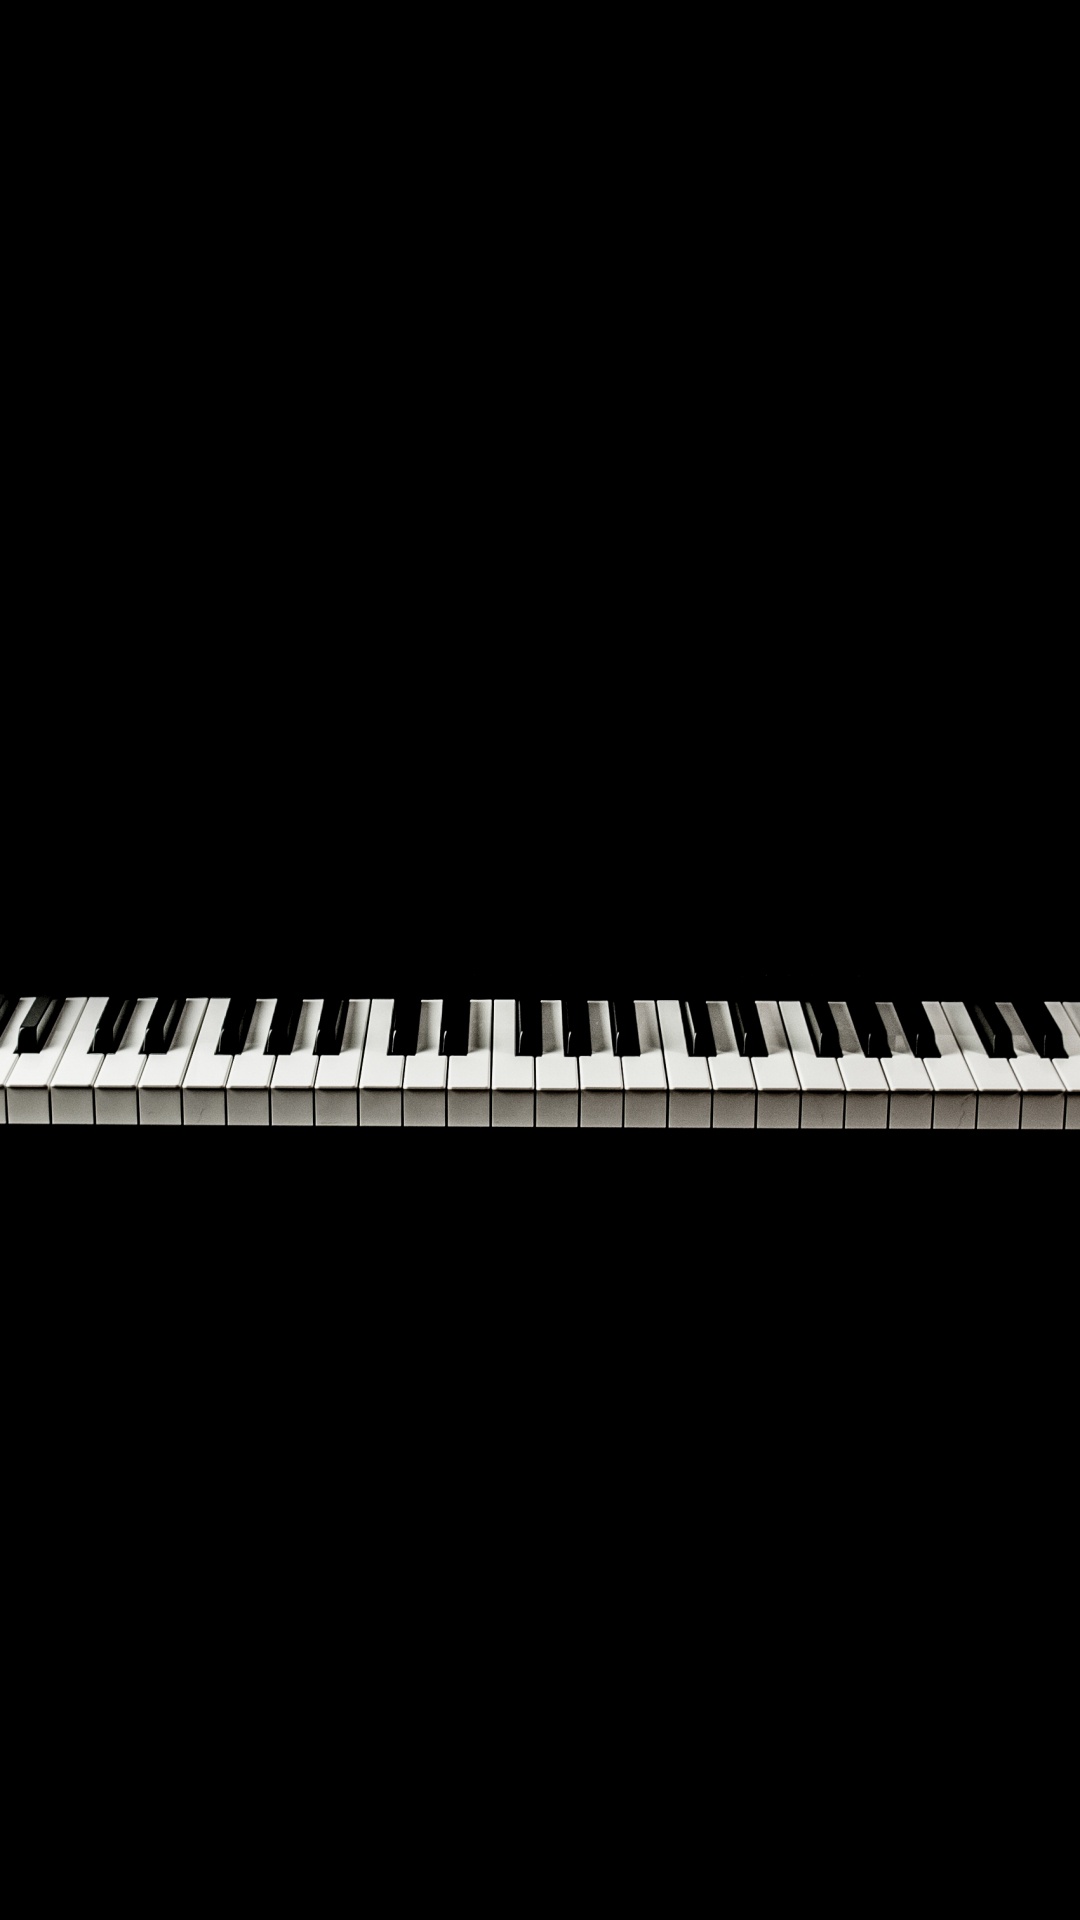 Teclado Musical, Piano Digital, Piano Eléctrico, Piano, Teclado. Wallpaper in 1080x1920 Resolution